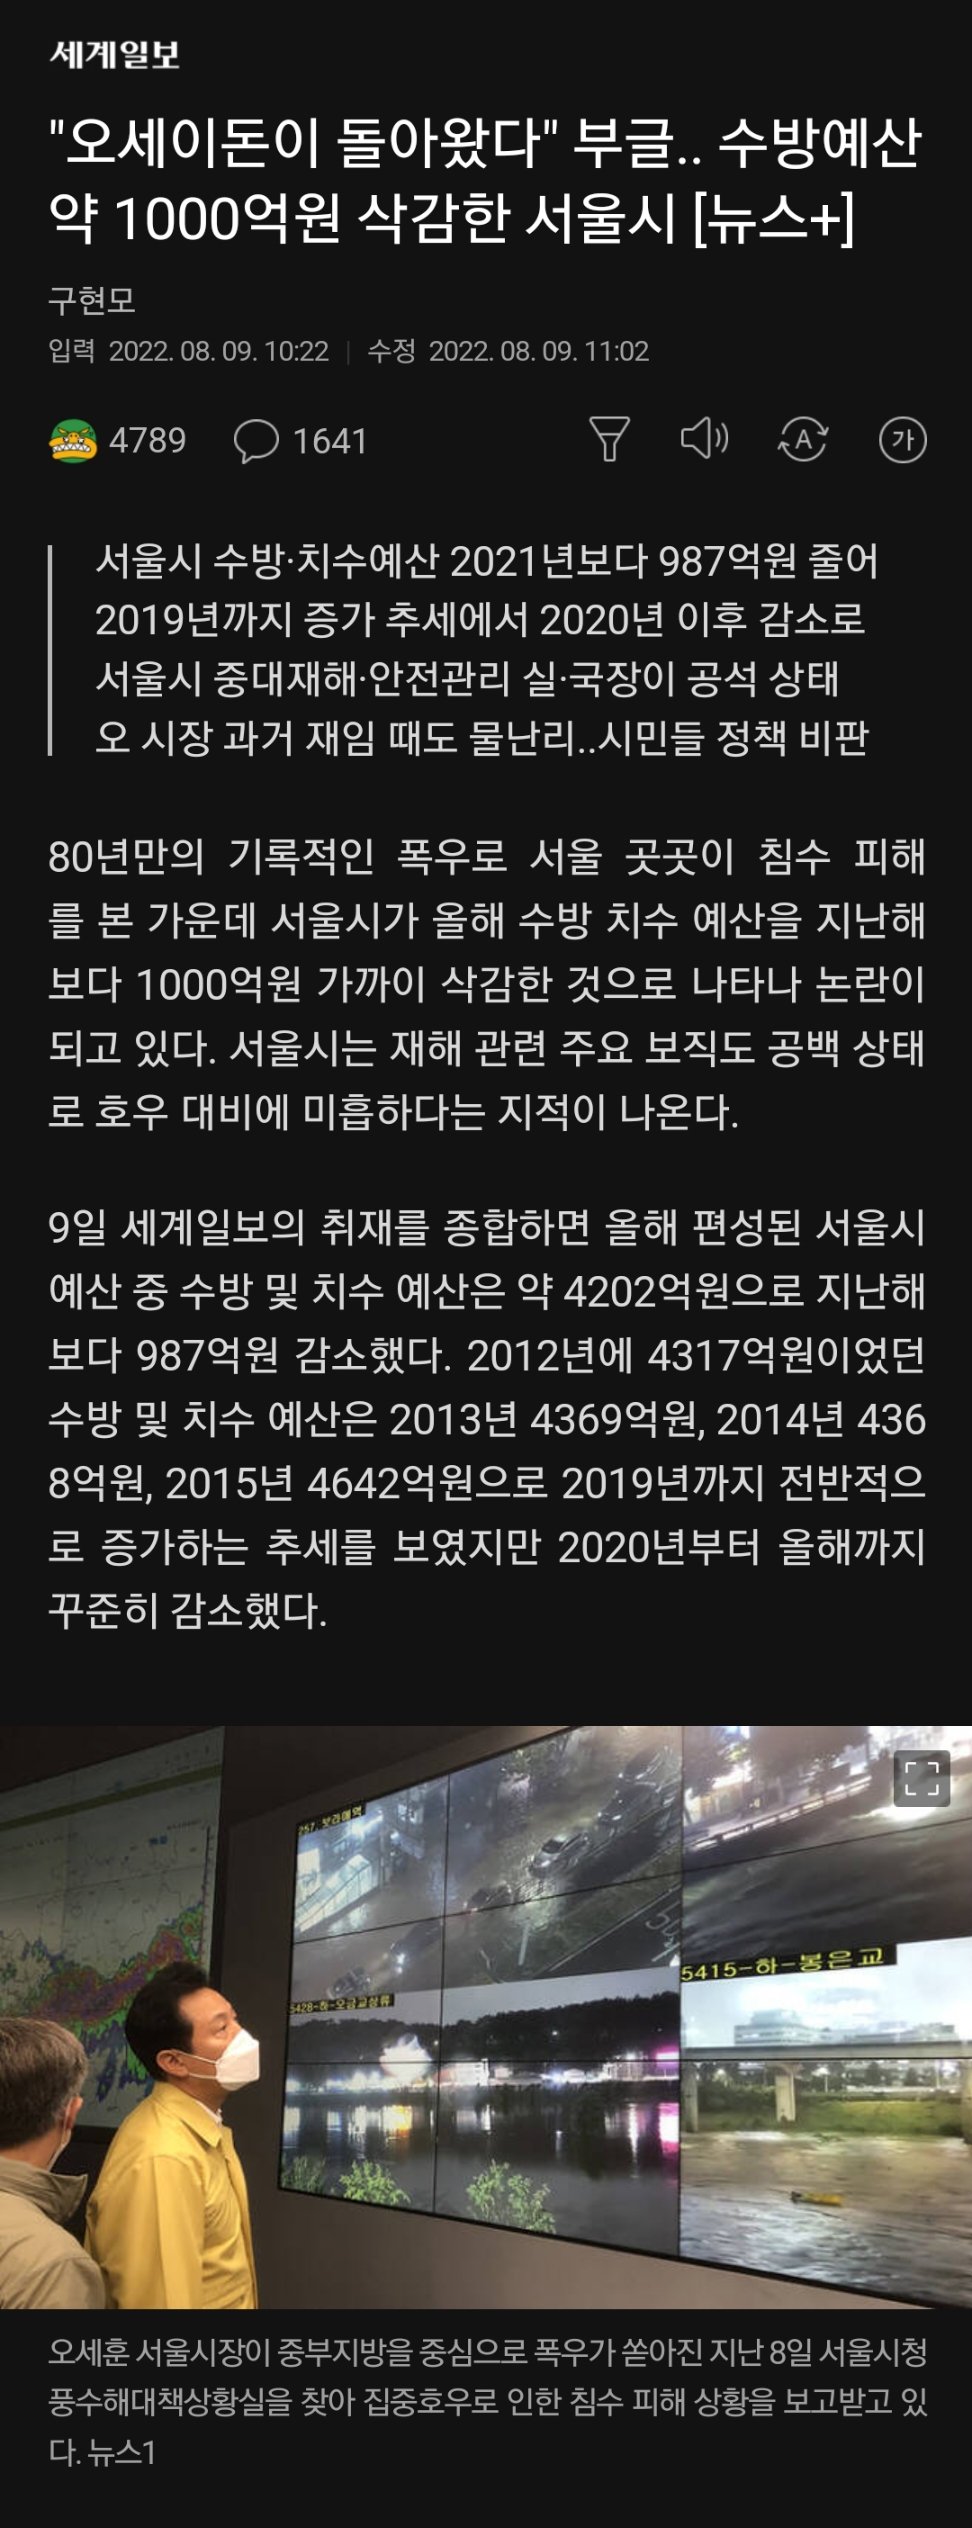 ""오세이돈이 돌아왔다"" 부글.. 수방예산 약 1000억원 삭감한 서울시